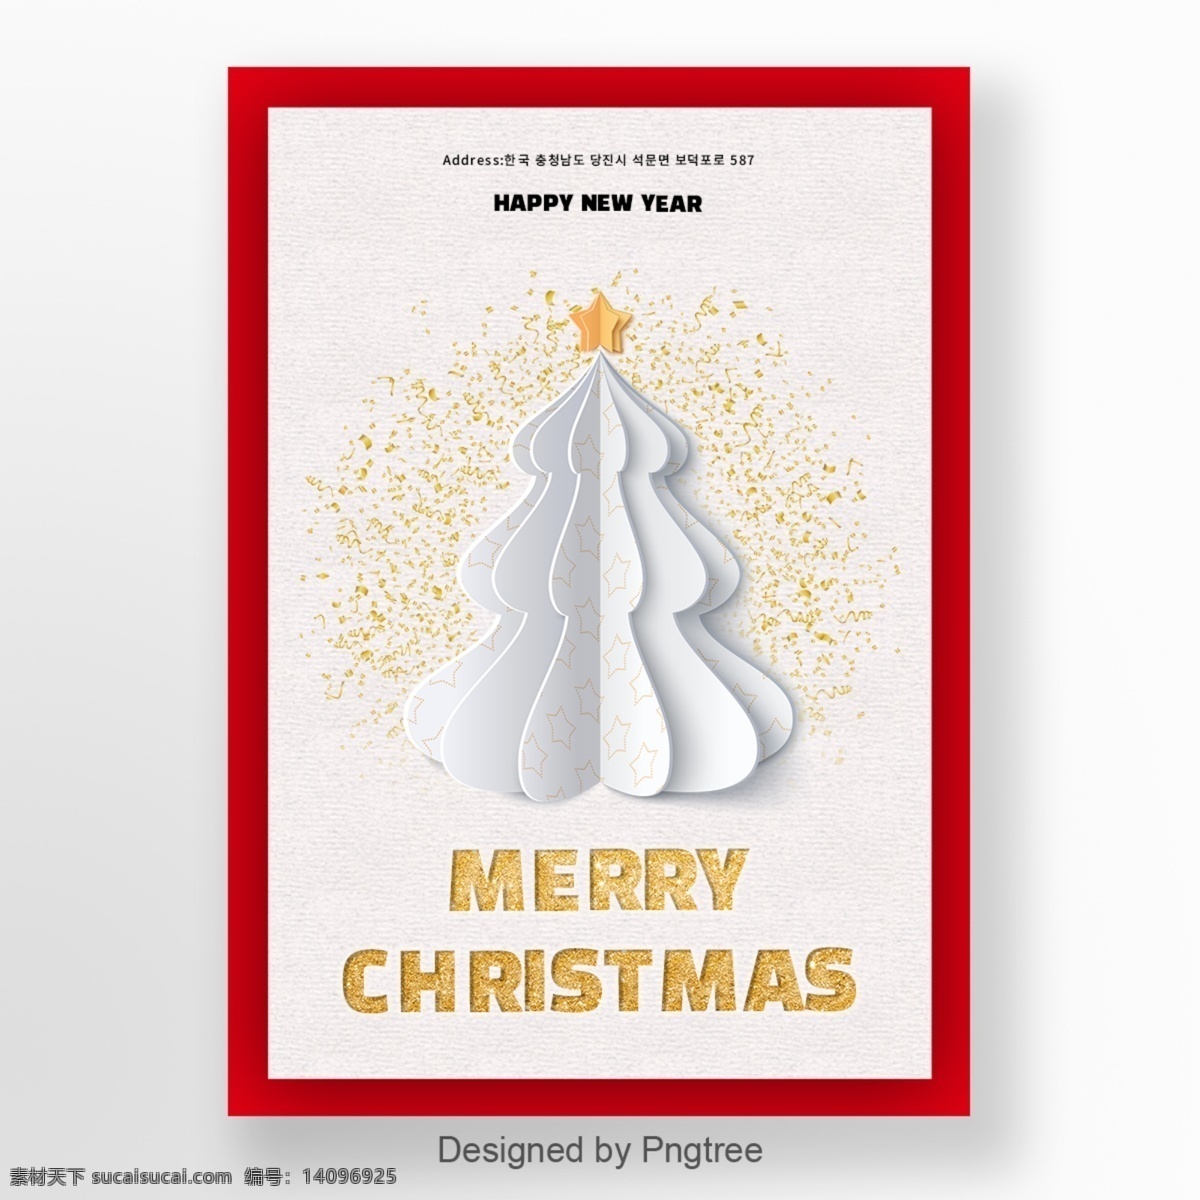 大气 精致 圣诞 金 红色 底部 折纸 圣诞快乐 海报 金色 白色 圣诞节 圣诞树 立体